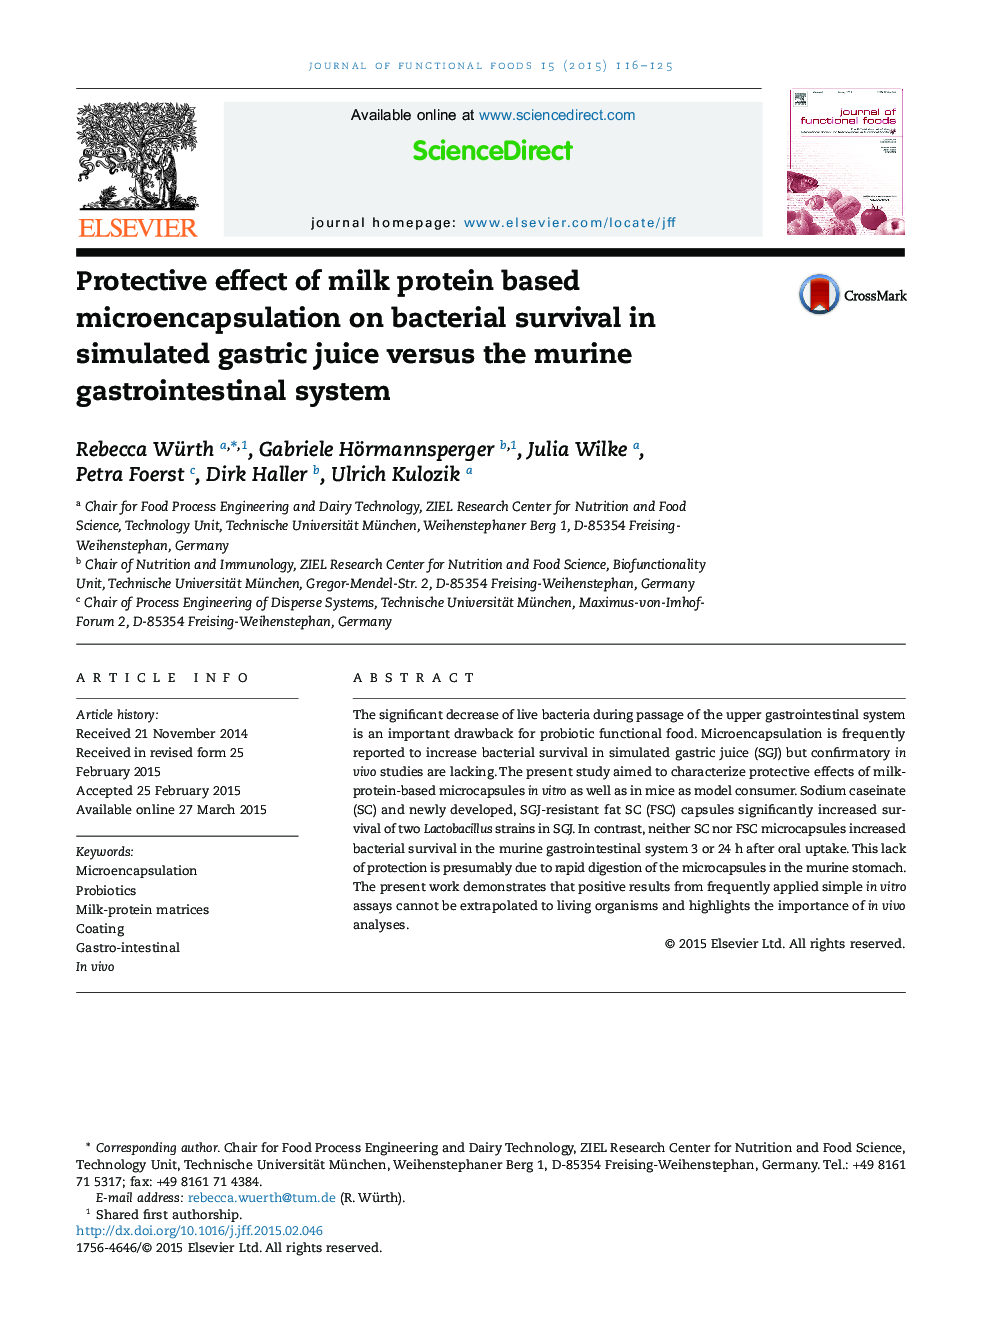 اثر محافظتی میکروکپسپسولاسیون بر پایه پروتئین شیر بر روی بقای باکتری در آب شبیه سازی شده گوارشی در مقایسه با دستگاه گوارش معده 